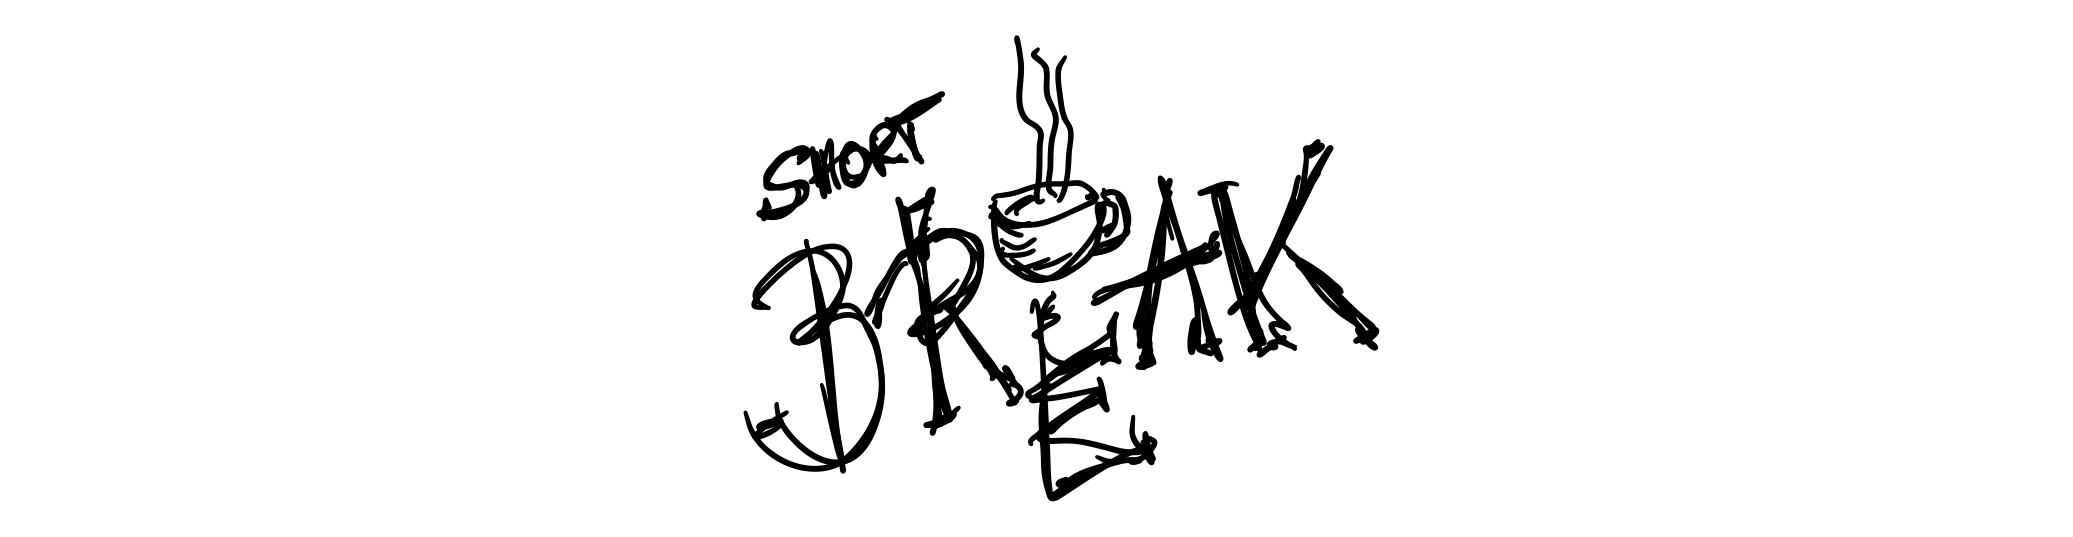 what is a short break